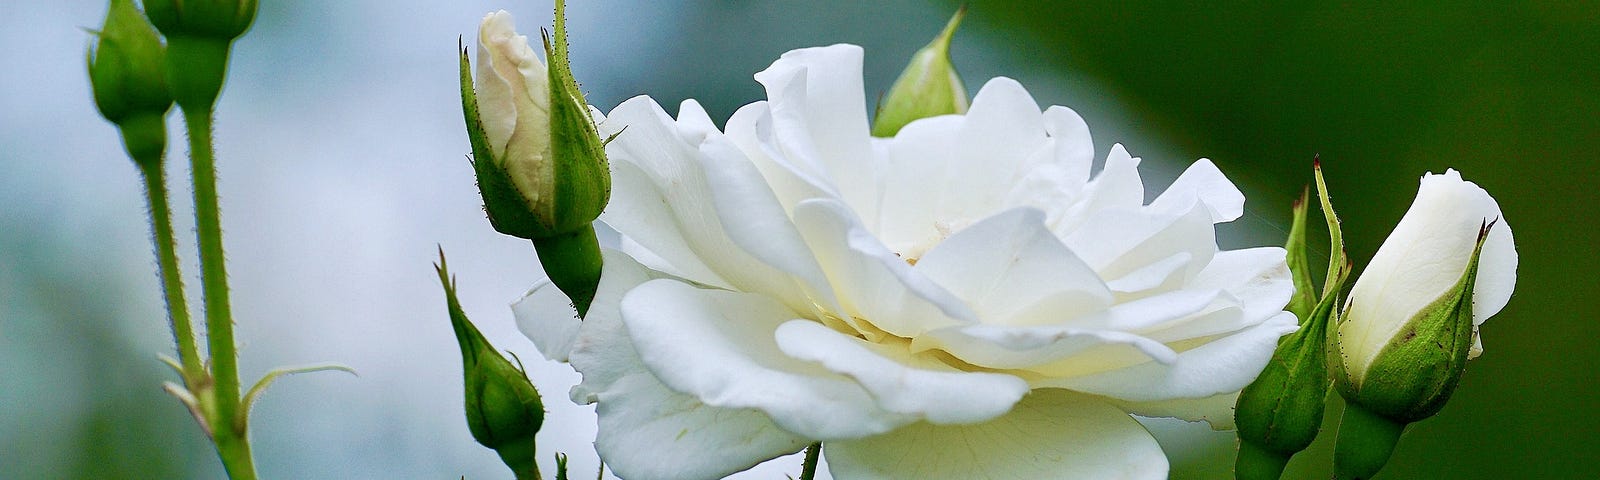 A white rose in full bloom